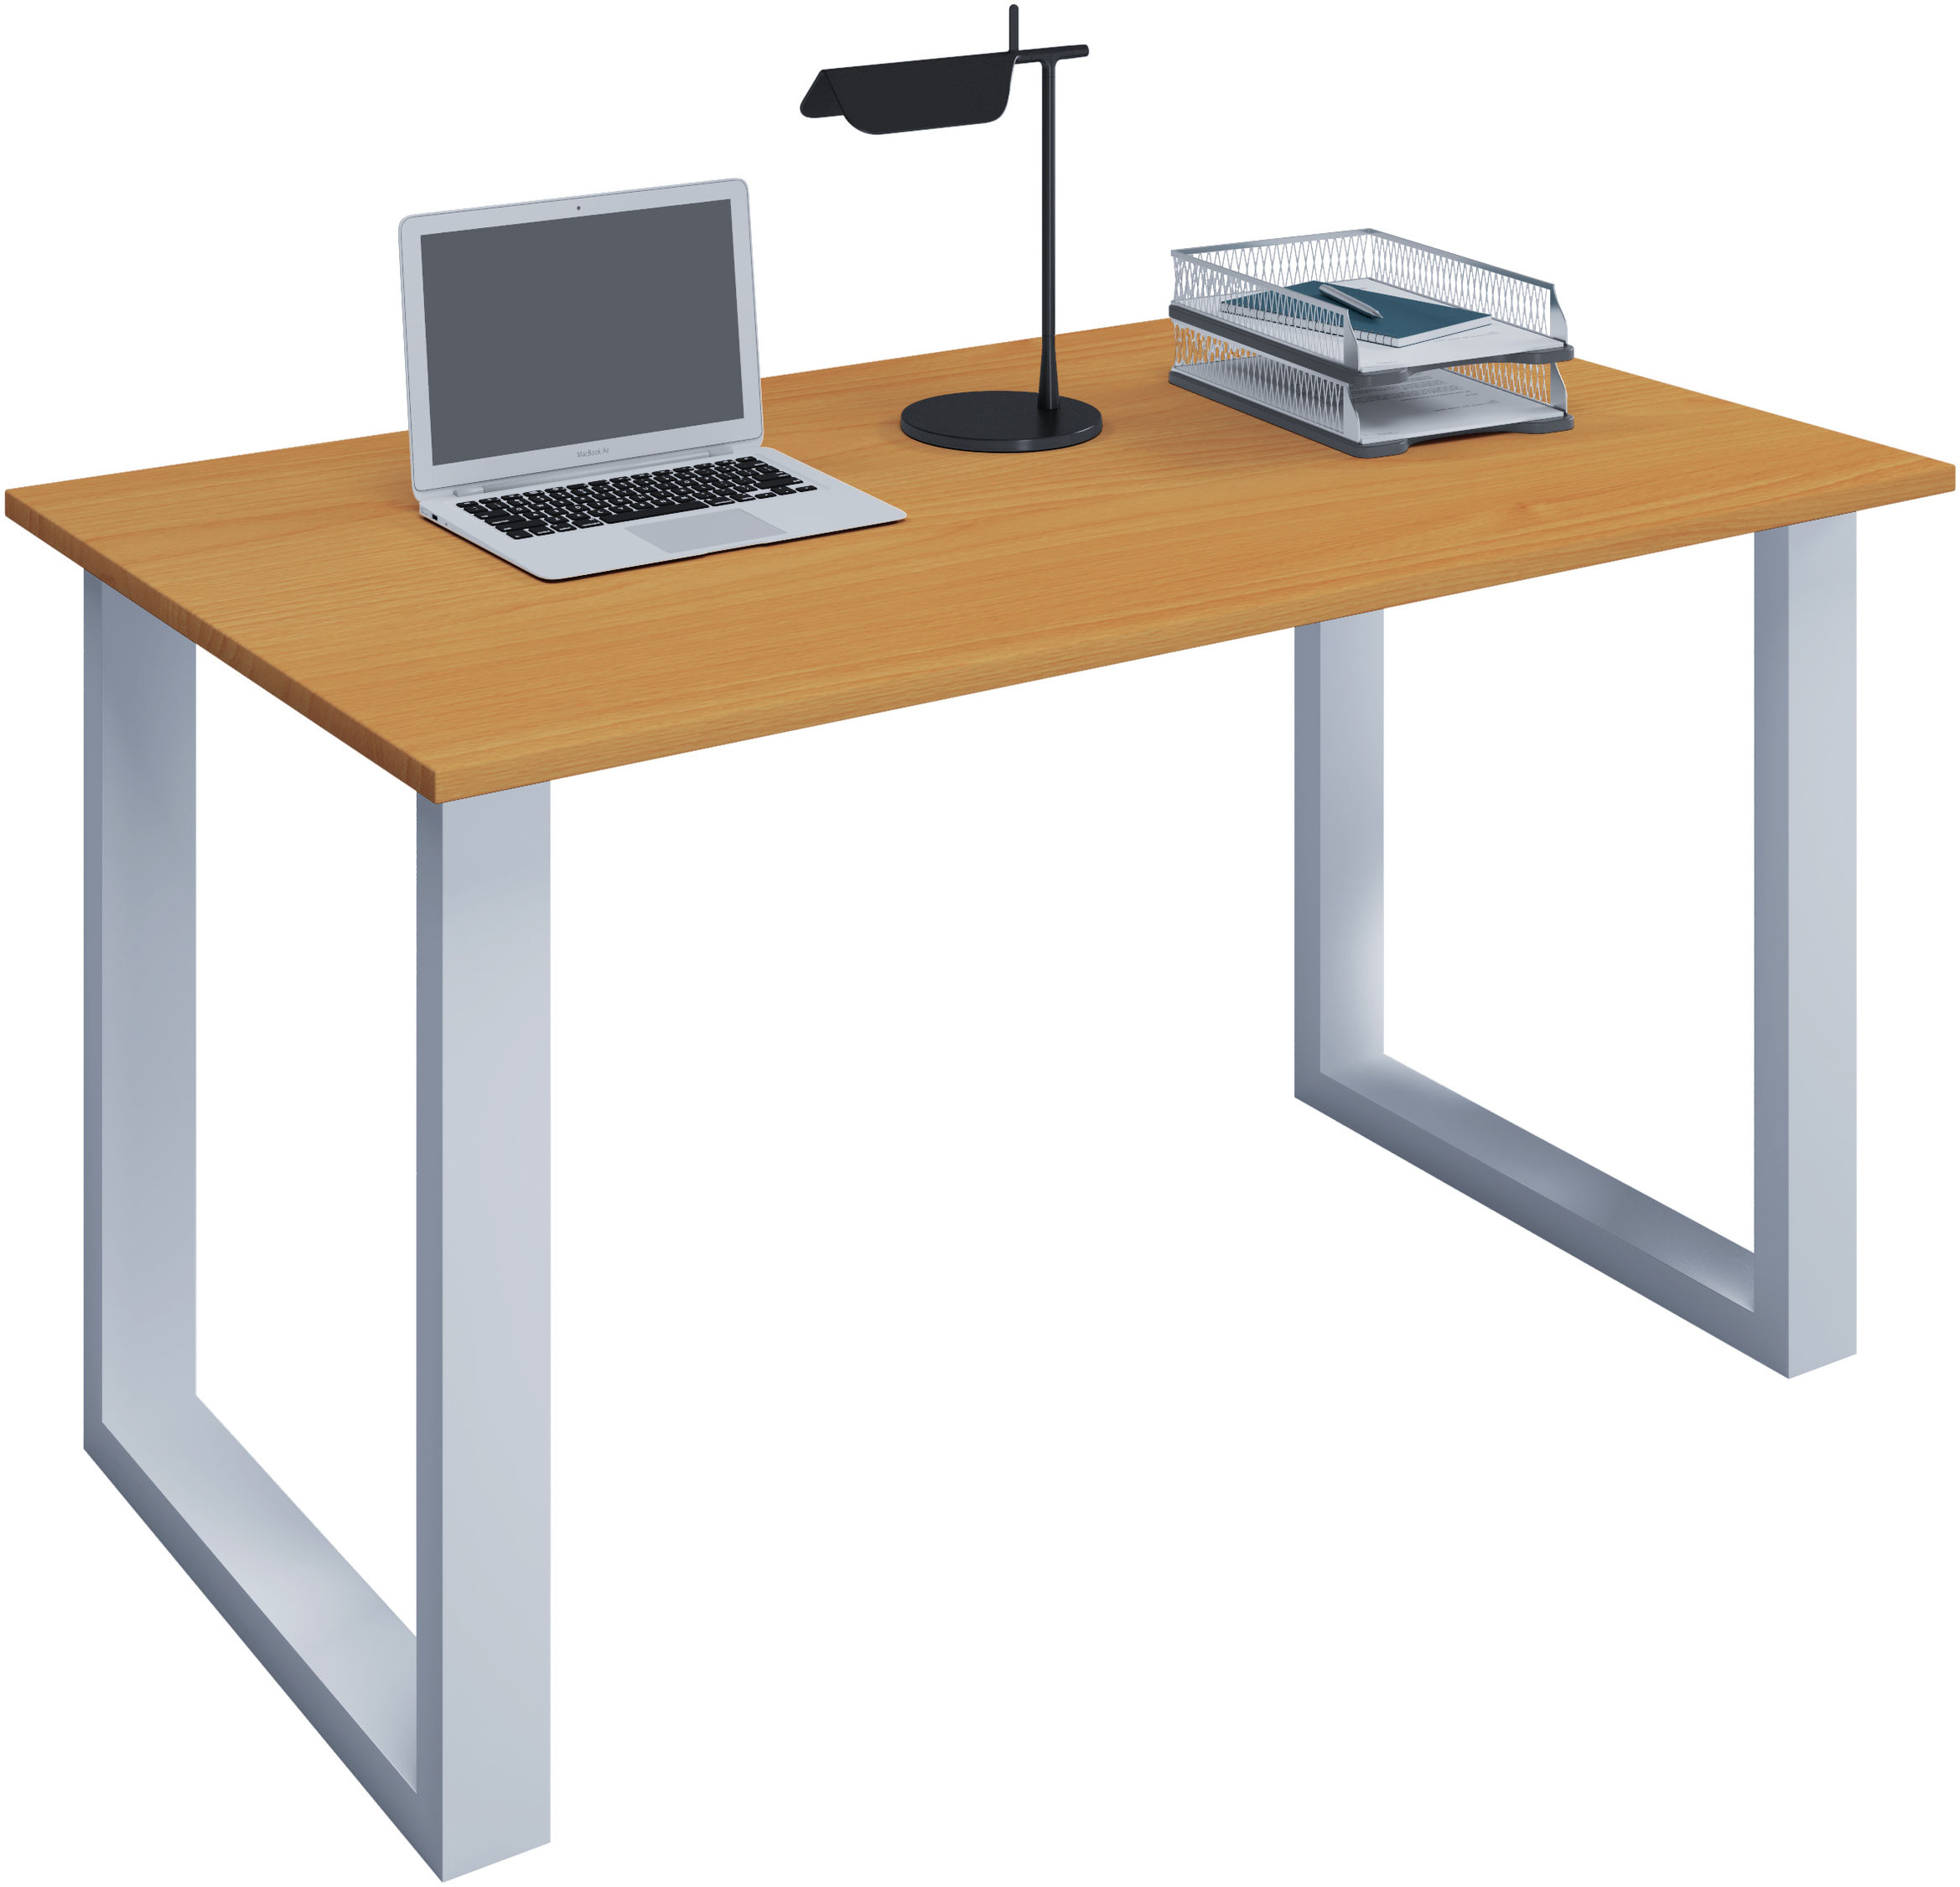 VCM Schreibtisch Computertisch Arbeitstisch Büro Möbel PC Tisch Lona  Büromöbel Schreibtisch Lona U Alu Weiß Farbe: B. 140 x T. 80 cm: Buche |  Weltbild.de